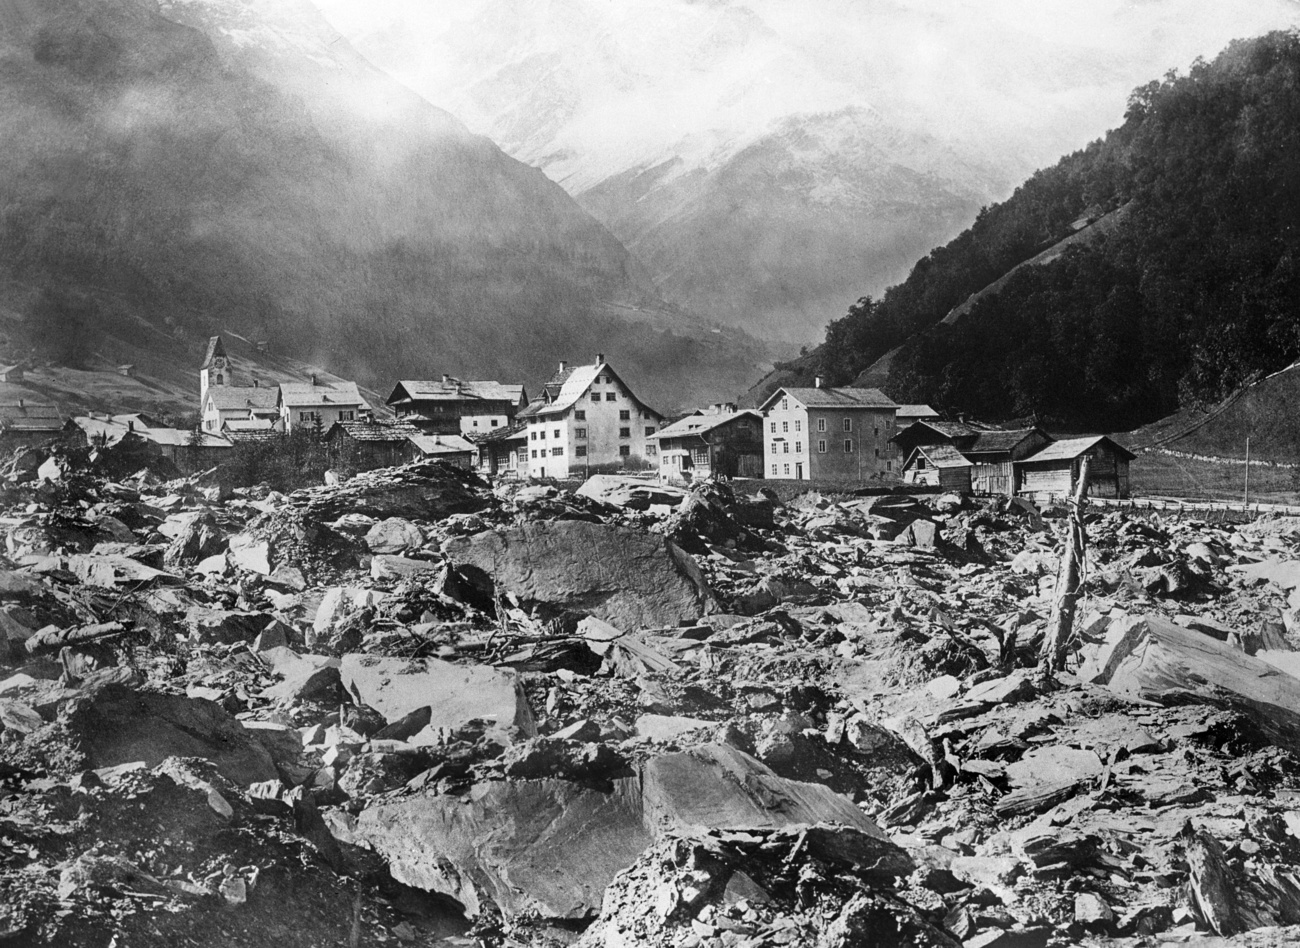 Elm after the landslide